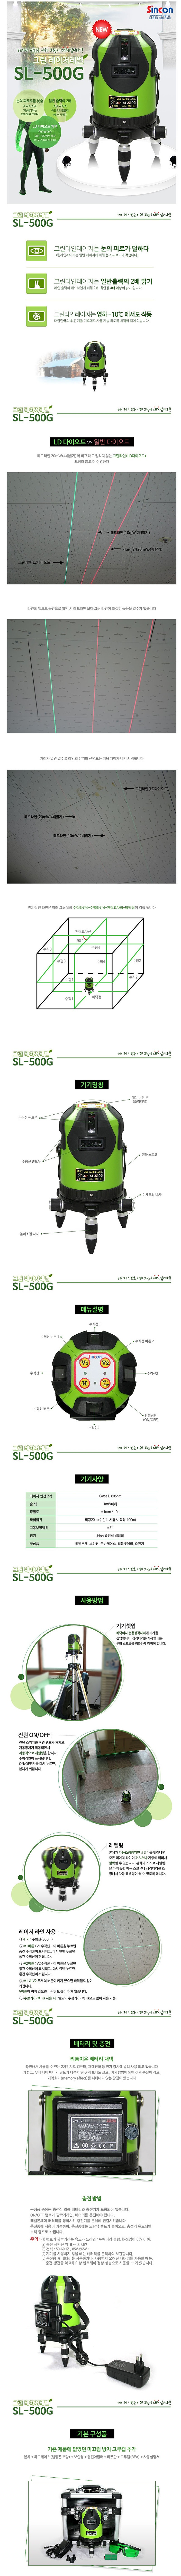 신콘 그린레이저레벨 SL-500G 전자식 레이저레벨기 SINCON